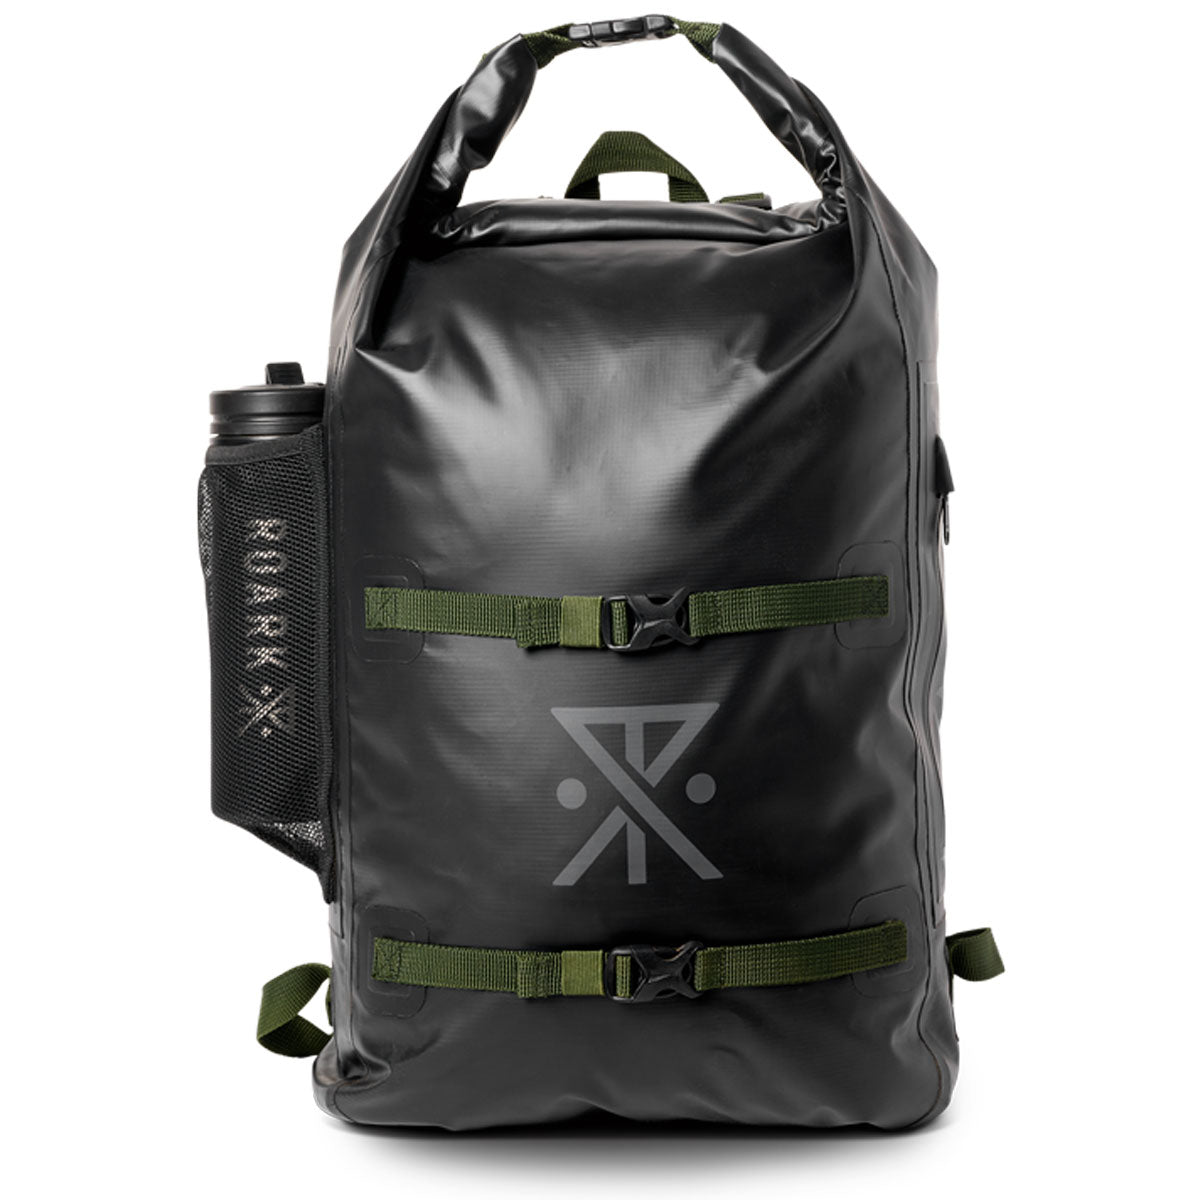 Roark Wet Dry Backpack - Black image 1